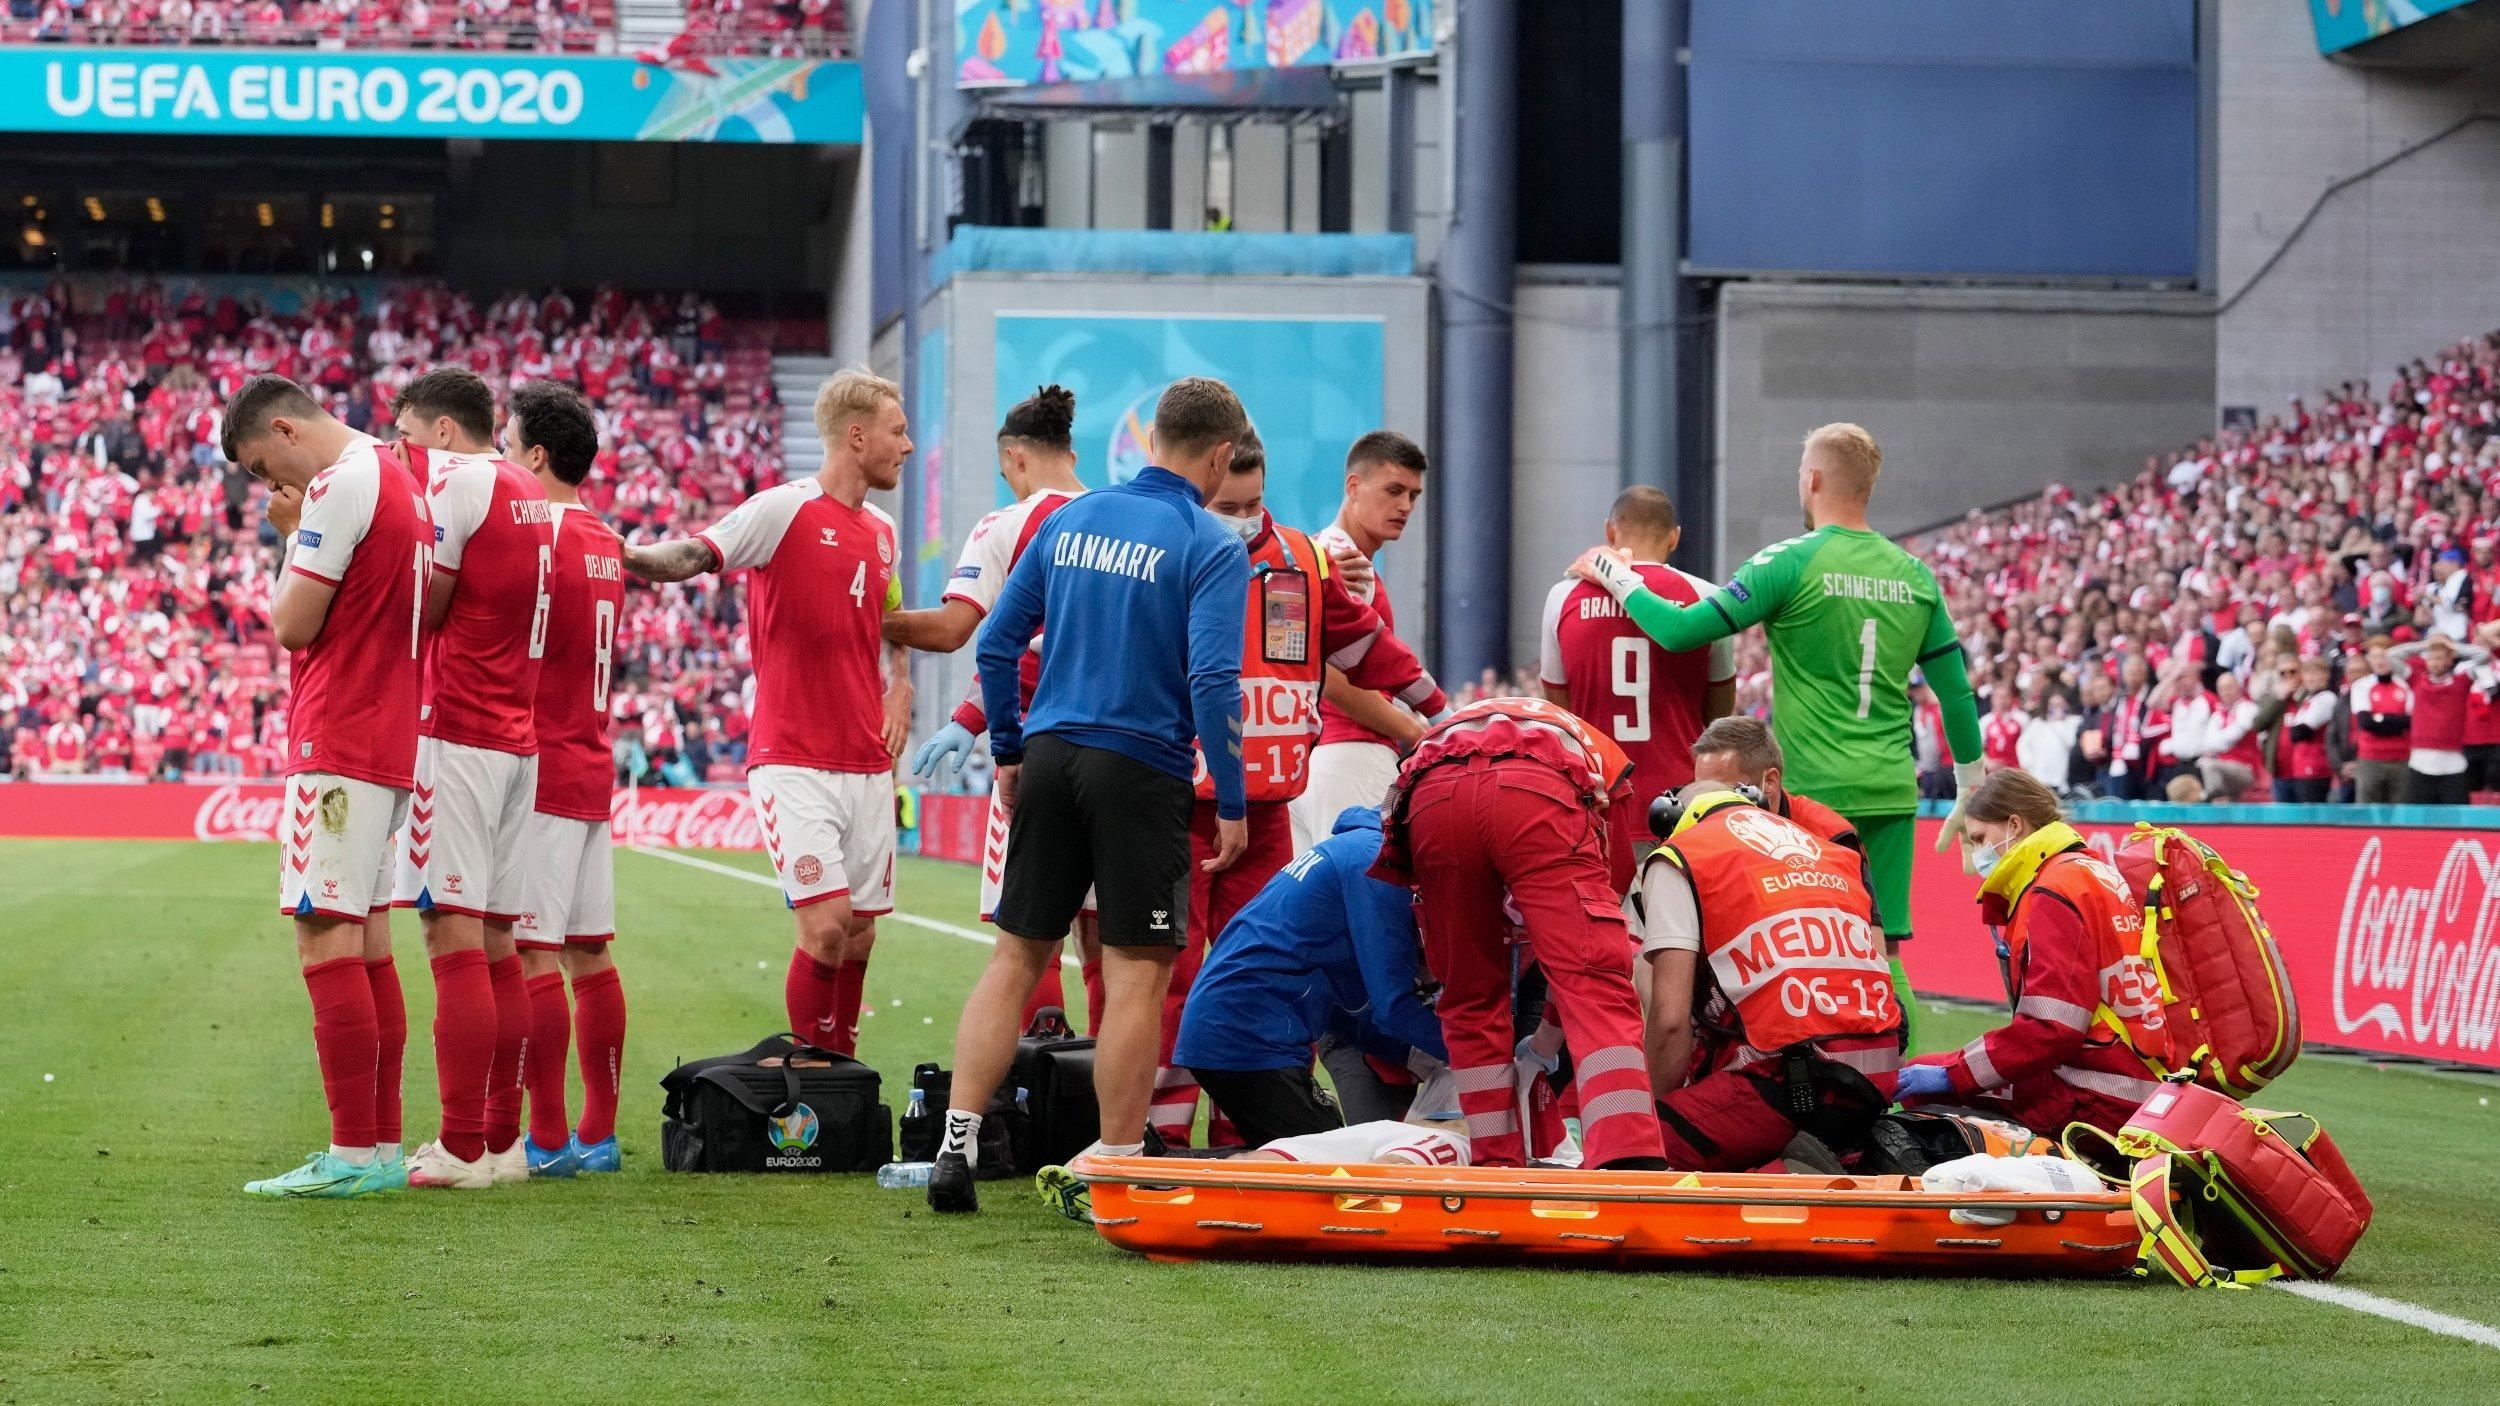 Медики, спасшие Кристиана Эриксена во время матча Евро-2020, получили награду от УЕФА